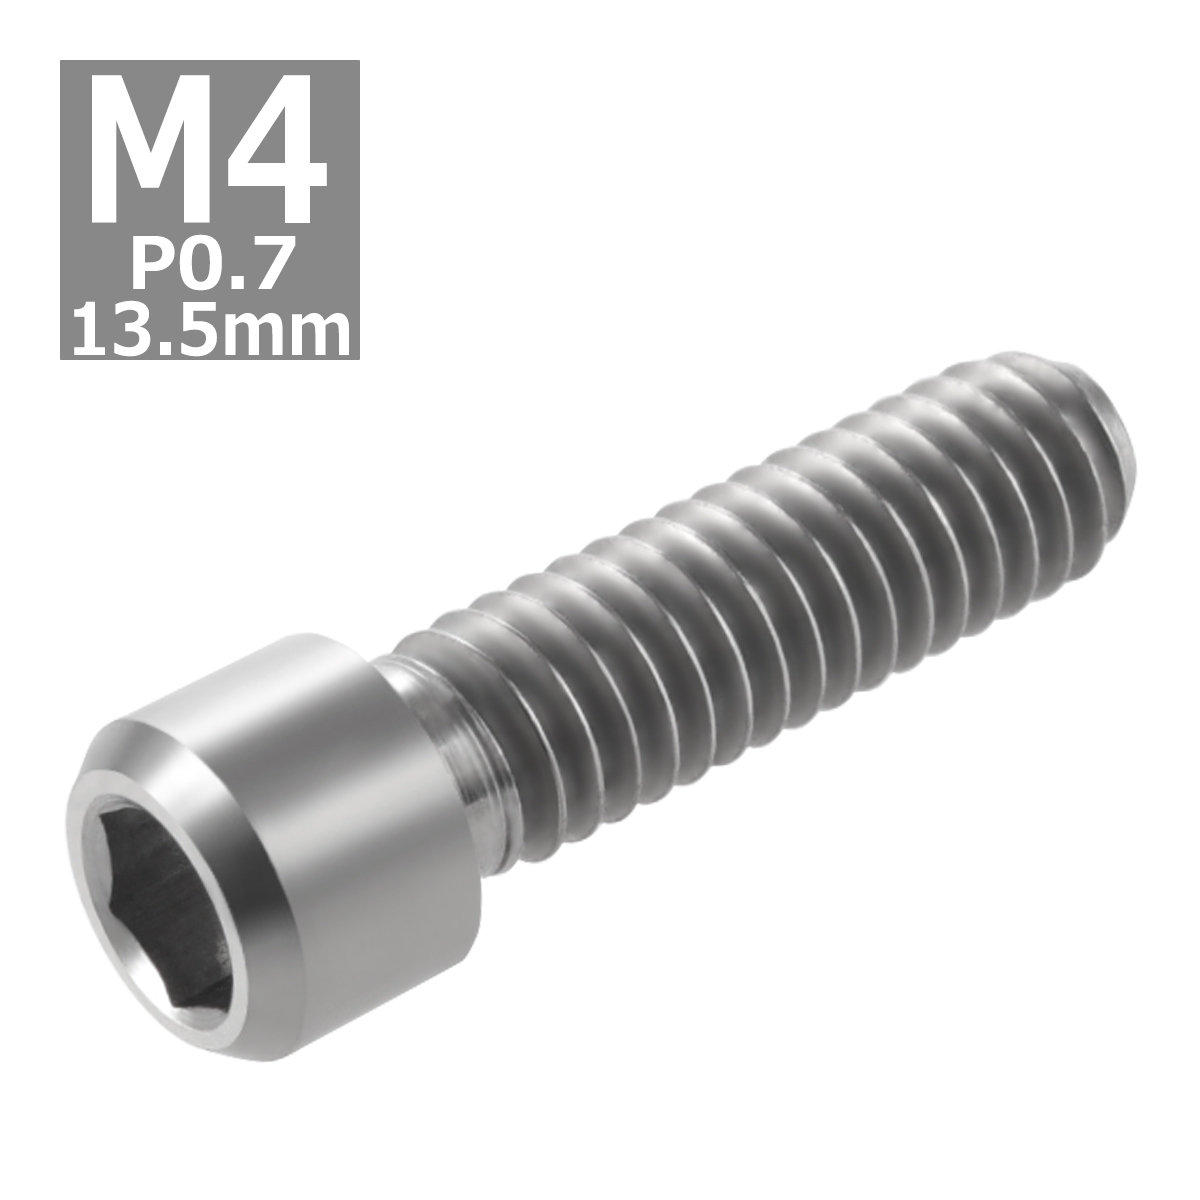 ディレーラー 調整ボルト 64チタンボルト M4×13.5mm P0.7 H/L 六角穴 